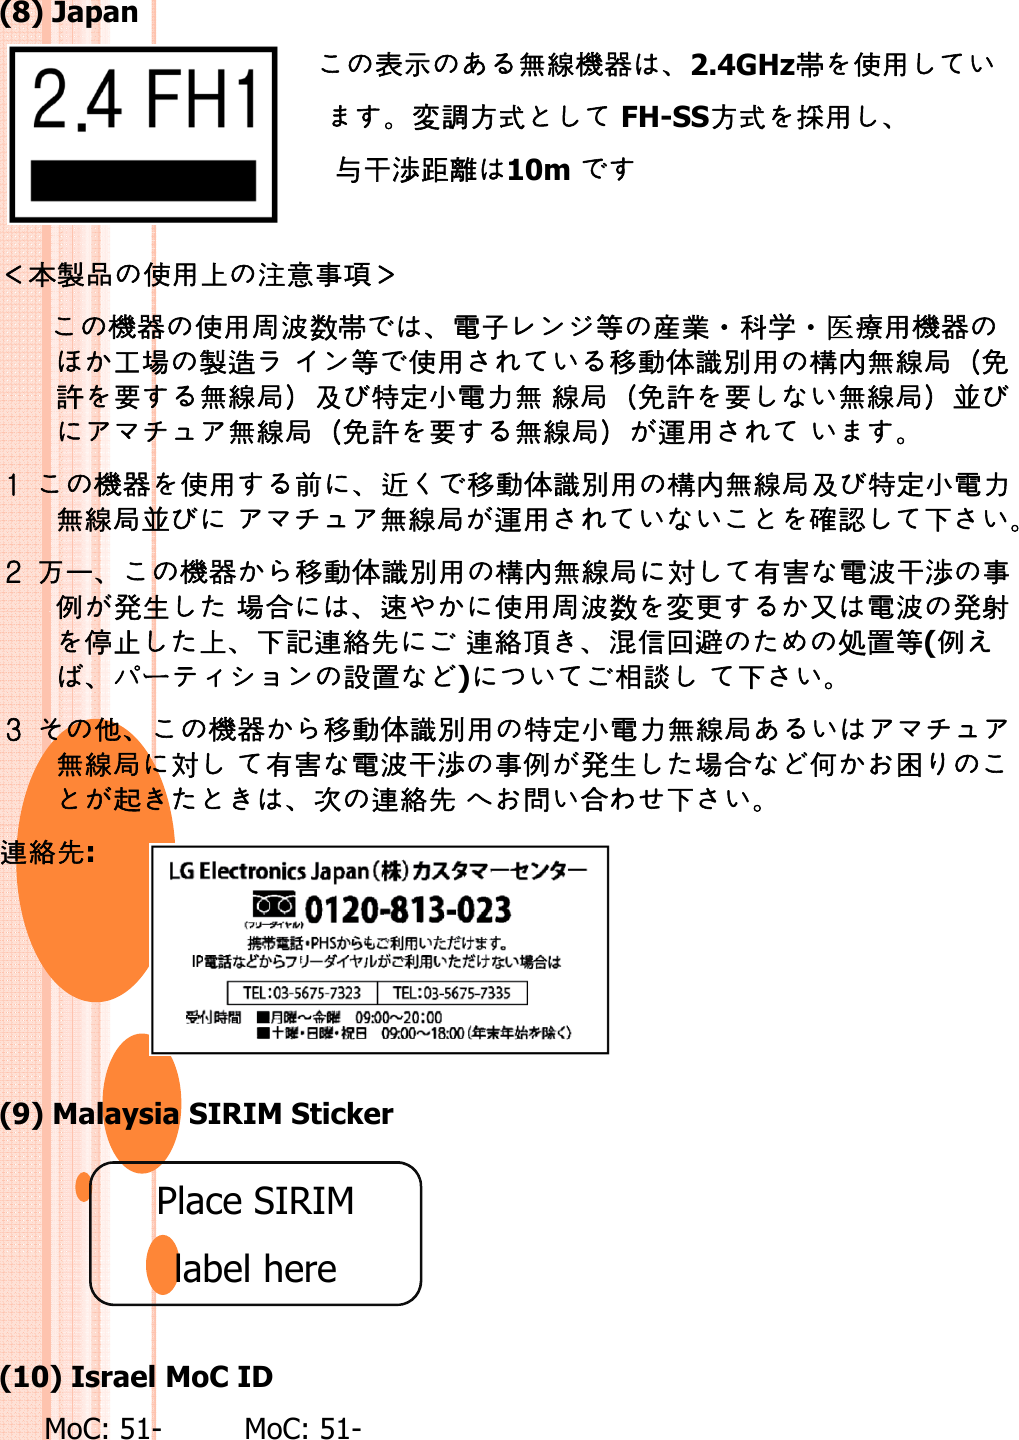 (8) Japan󷓨󶳾󶥹󶯨󶙂󶘭2.4GHz帯󶬧󶼰変󷇞󶧸󶴊 FH-SS󶧸󶴊󷌍󶼰与󶏘渉󶑍󶢾10m 󶪈󷆰󷓭󶬧󶼰󶭾󷈘󷀚󶬢󷕍󶙂󶘭󶬧󶼰󷈎󷑾数帯󷅓󷂑󶞫󶭧󶷪・󶔣学・医󶡭󶼰󶙂󶘭󶔓󷃂󷆰󷇡 󶞫󶬧󶼰󷀿󶞇󷳭󶴓󶩒󶼰󶖐内󶥹󶯨󶖱󶤡󷕳󶼕󶥹󶯨󶖱󶘞󷑵󷅲󶰯󷅓󶠈󶥹󶯨󶖱󶤡󷕳󶼕󶥹󶯨󶖱󷲴󷕳󶼕󶥹󶯨󶖱󶘞󷑵󷅲󶰯󷅓󶠈󶥹󶯨󶖱󶤡󷕳󶼕󶥹󶯨󶖱󷲴󶥹󶯨󶖱󶤡󷕳󶼕󶥹󶯨󶖱󶽫󶼰  󶙂󶘭󶬧󶼰󷄳󶘌󷀿󶞇󷳭󶴓󶩒󶼰󶖐内󶥹󶯨󶖱󶘞󷑵󷅲󶰯󷅓󶠈󶥹󶯨󶖱󷲴 󶥹󶯨󶖱󶽫󶼰󷘒󷁩󷔇 󶣠󷁯󶙂󶘭󷀿󶞇󷳭󶴓󶩒󶼰󶖐内󶥹󶯨󶖱対󶾽󷕔󷅓󷑾󶏘渉󶬢󶠹発󶮦󷃂󷔶󶱘󶬧󶼰󷈎󷑾数変󶒠󶼽󷅓󷑾発󶬴󶠹発󶮦󷃂󷔶󶱘󶬧󶼰󷈎󷑾数変󶒠󶼽󷅓󷑾発󶬴󷅮󷉧󶭾󷔇󶙜󶠙󶞽󶯙 󶠙󶞽󷆠󷗰󶴙󷙄󷓹処󷏹󶞫(󶠹ー󶰀󷏹)󶮓󶜠 󷔇 󷐔󶙂󶘭󷀿󶞇󷳭󶴓󶩒󶼰󷑵󷅲󶰯󷅓󶠈󶥹󶯨󶖱󶥹󶯨󶖱対 󶾽󷕔󷅓󷑾󶏘渉󶬢󶠹発󶮦󷃂󷔶󷔈󶔁󶙟󷋅󶠙󶞽󶯙 󶦉󷔶󷔇󶠙󶞽󶯙:(9) Malaysia SIRIM StickerPlace SIRIM lblh(10) Israel MoC ID MoC: 51- MoC: 51-label here